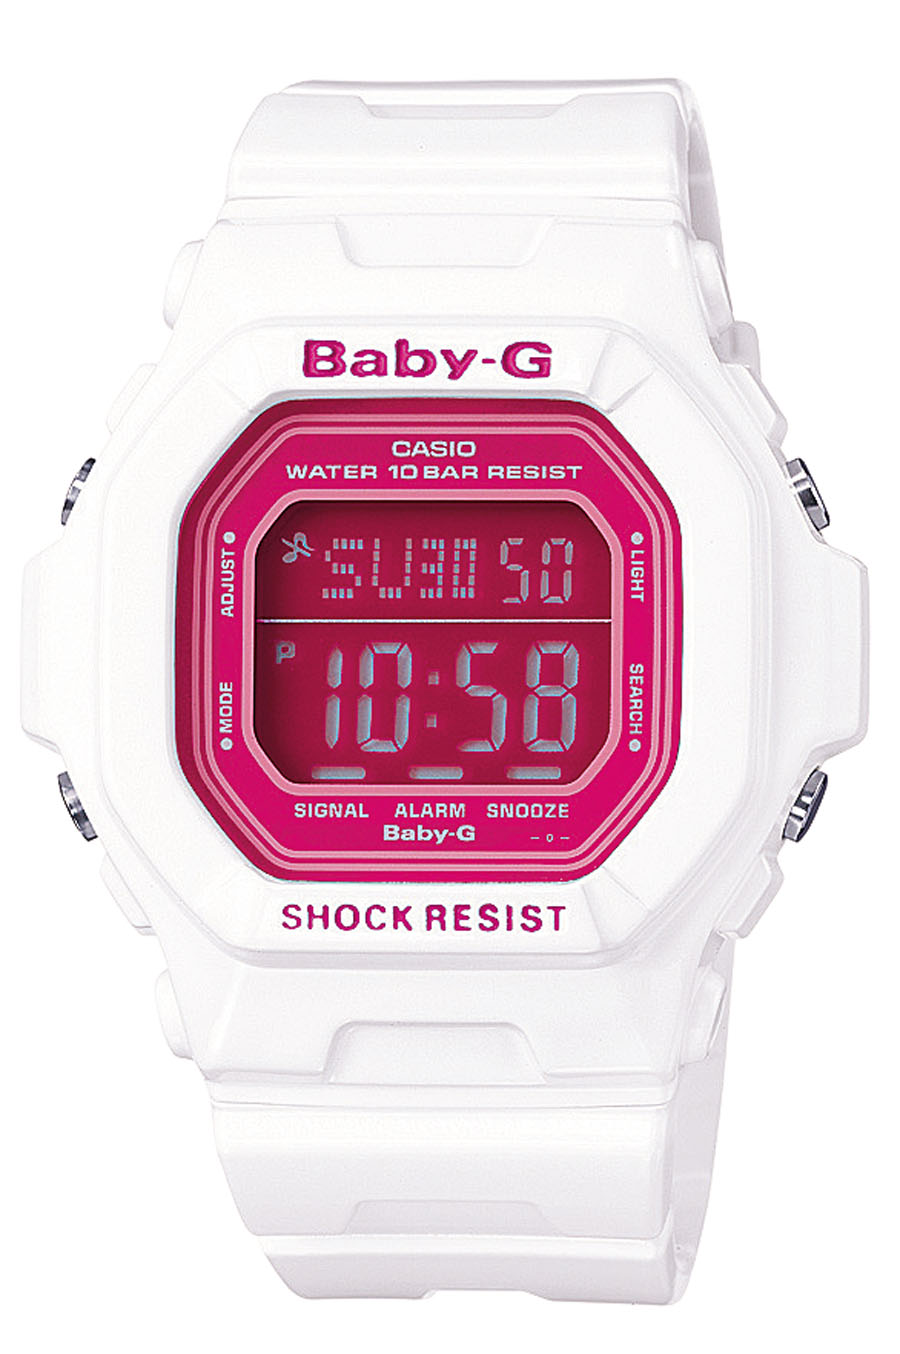 Baby-G, R$ 410. Casio, (11) 2539-2770